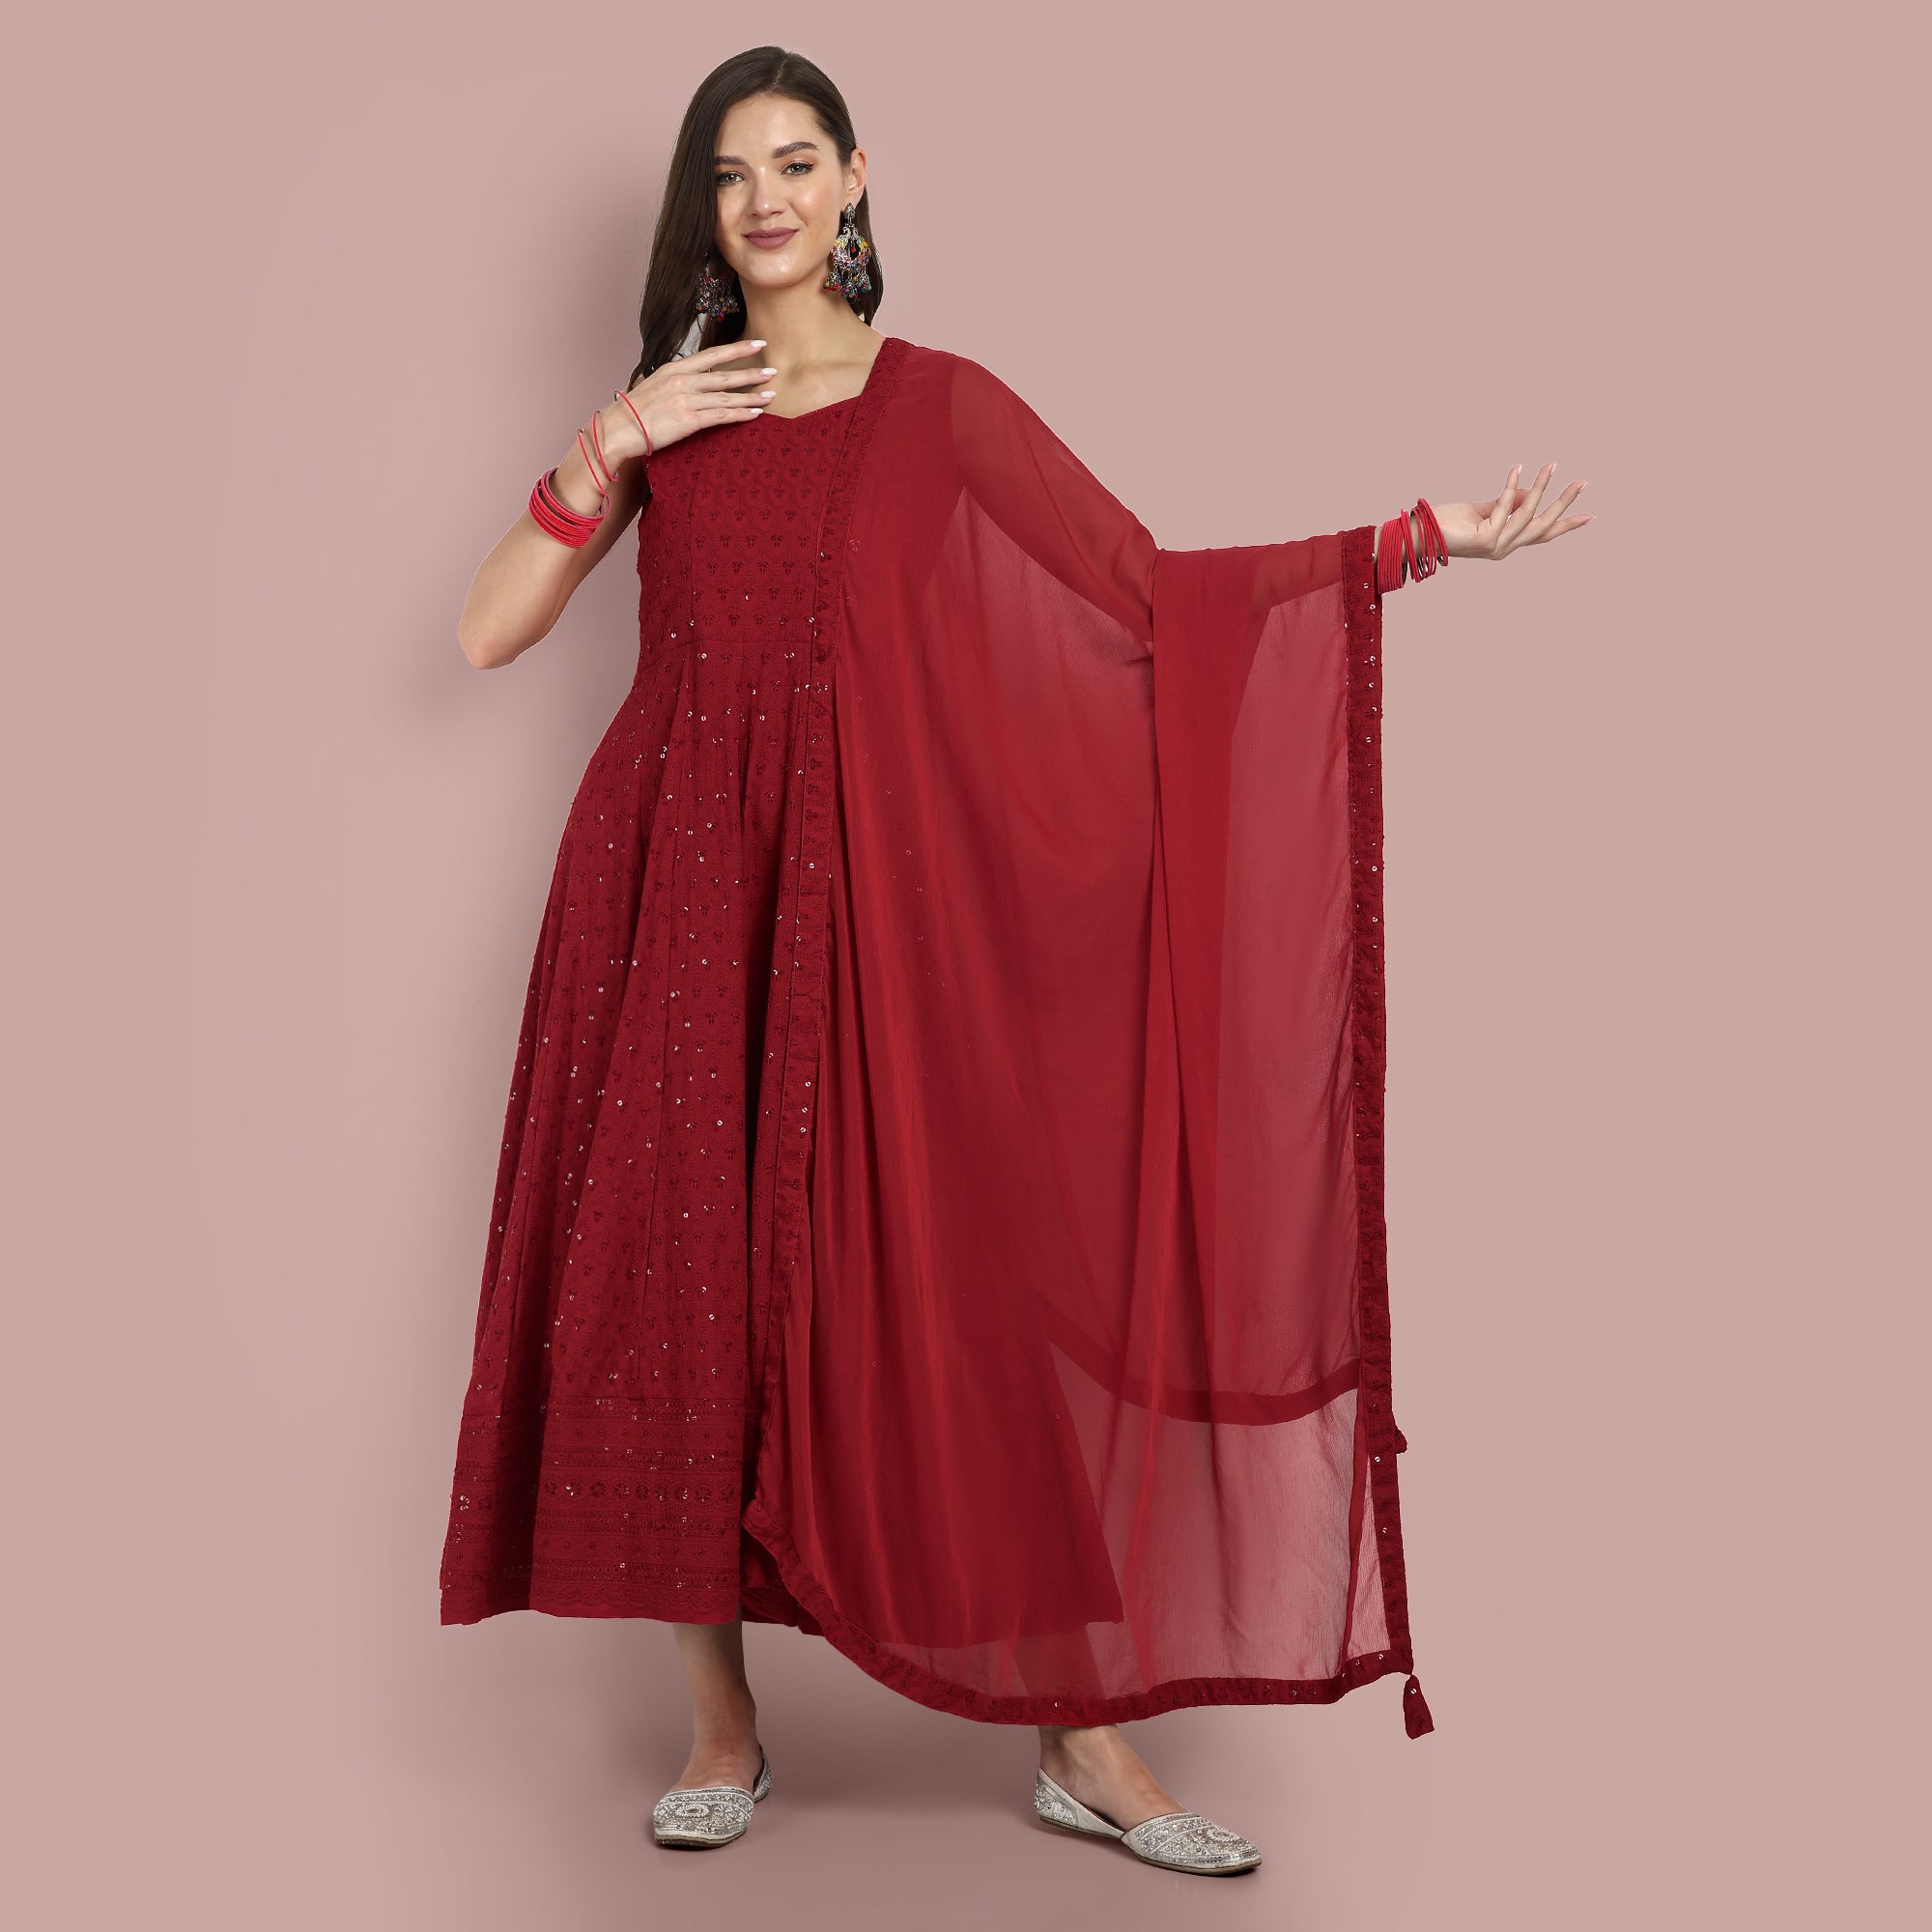 Sequin Embellished Designer Wear Anarkali Maxi Ethnic Dress With Dupatta